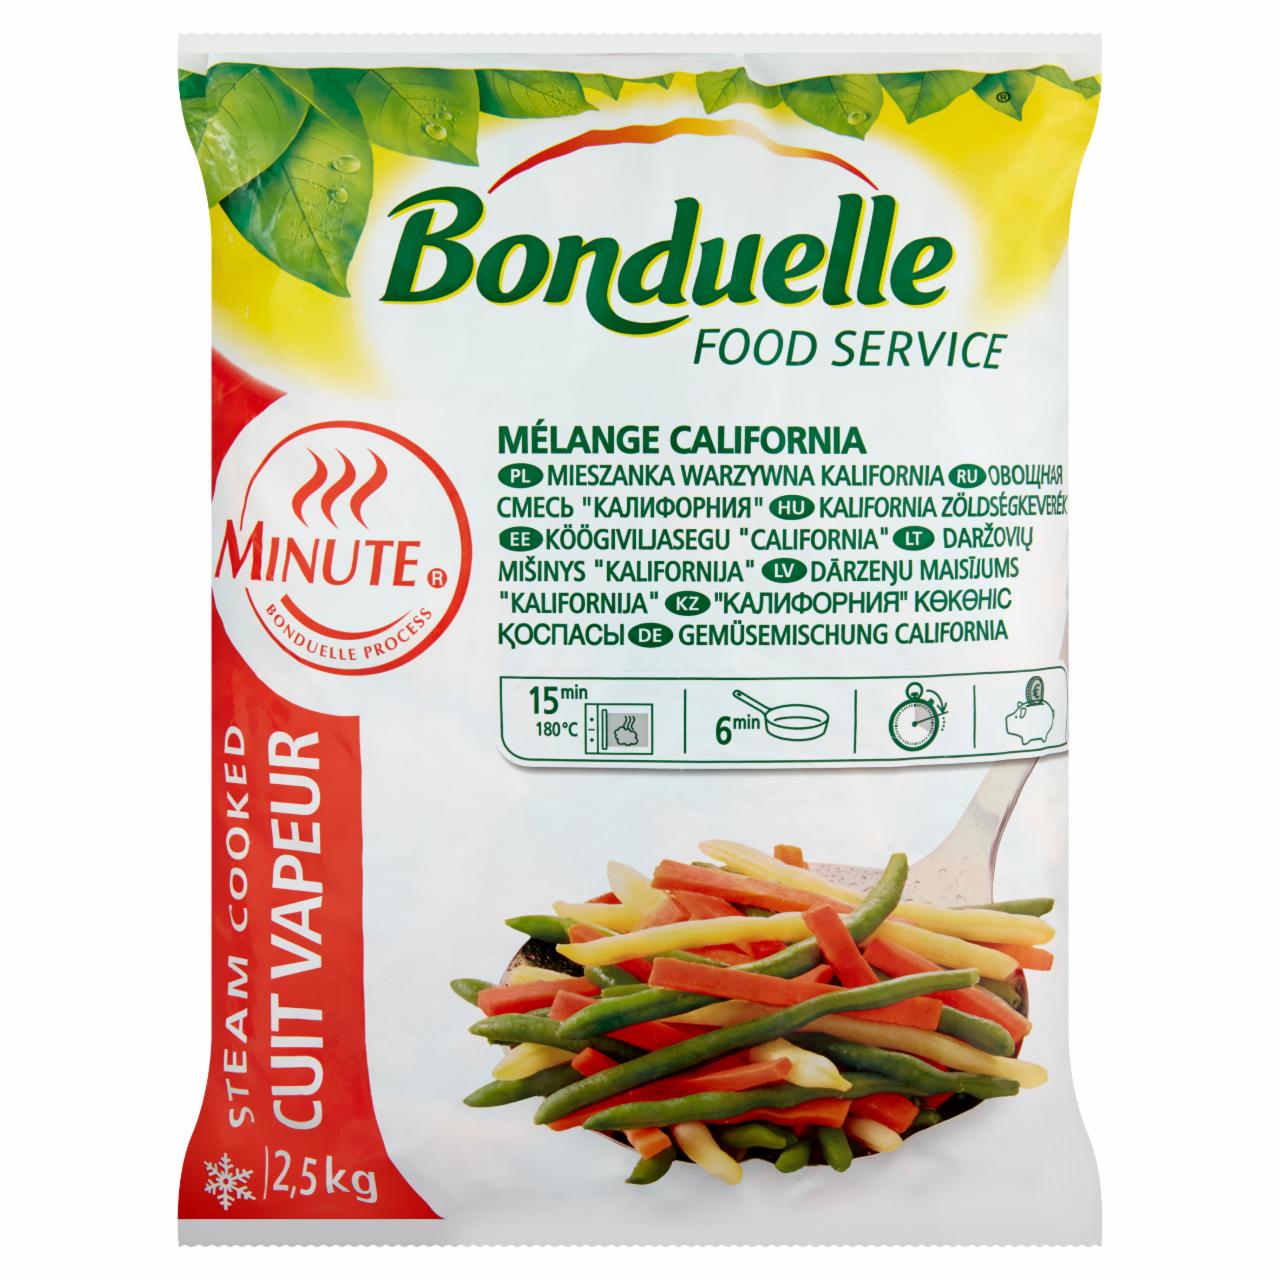 Photo - Bonduelle California Quick-Frozen Vegetable Mix 2,5 kg